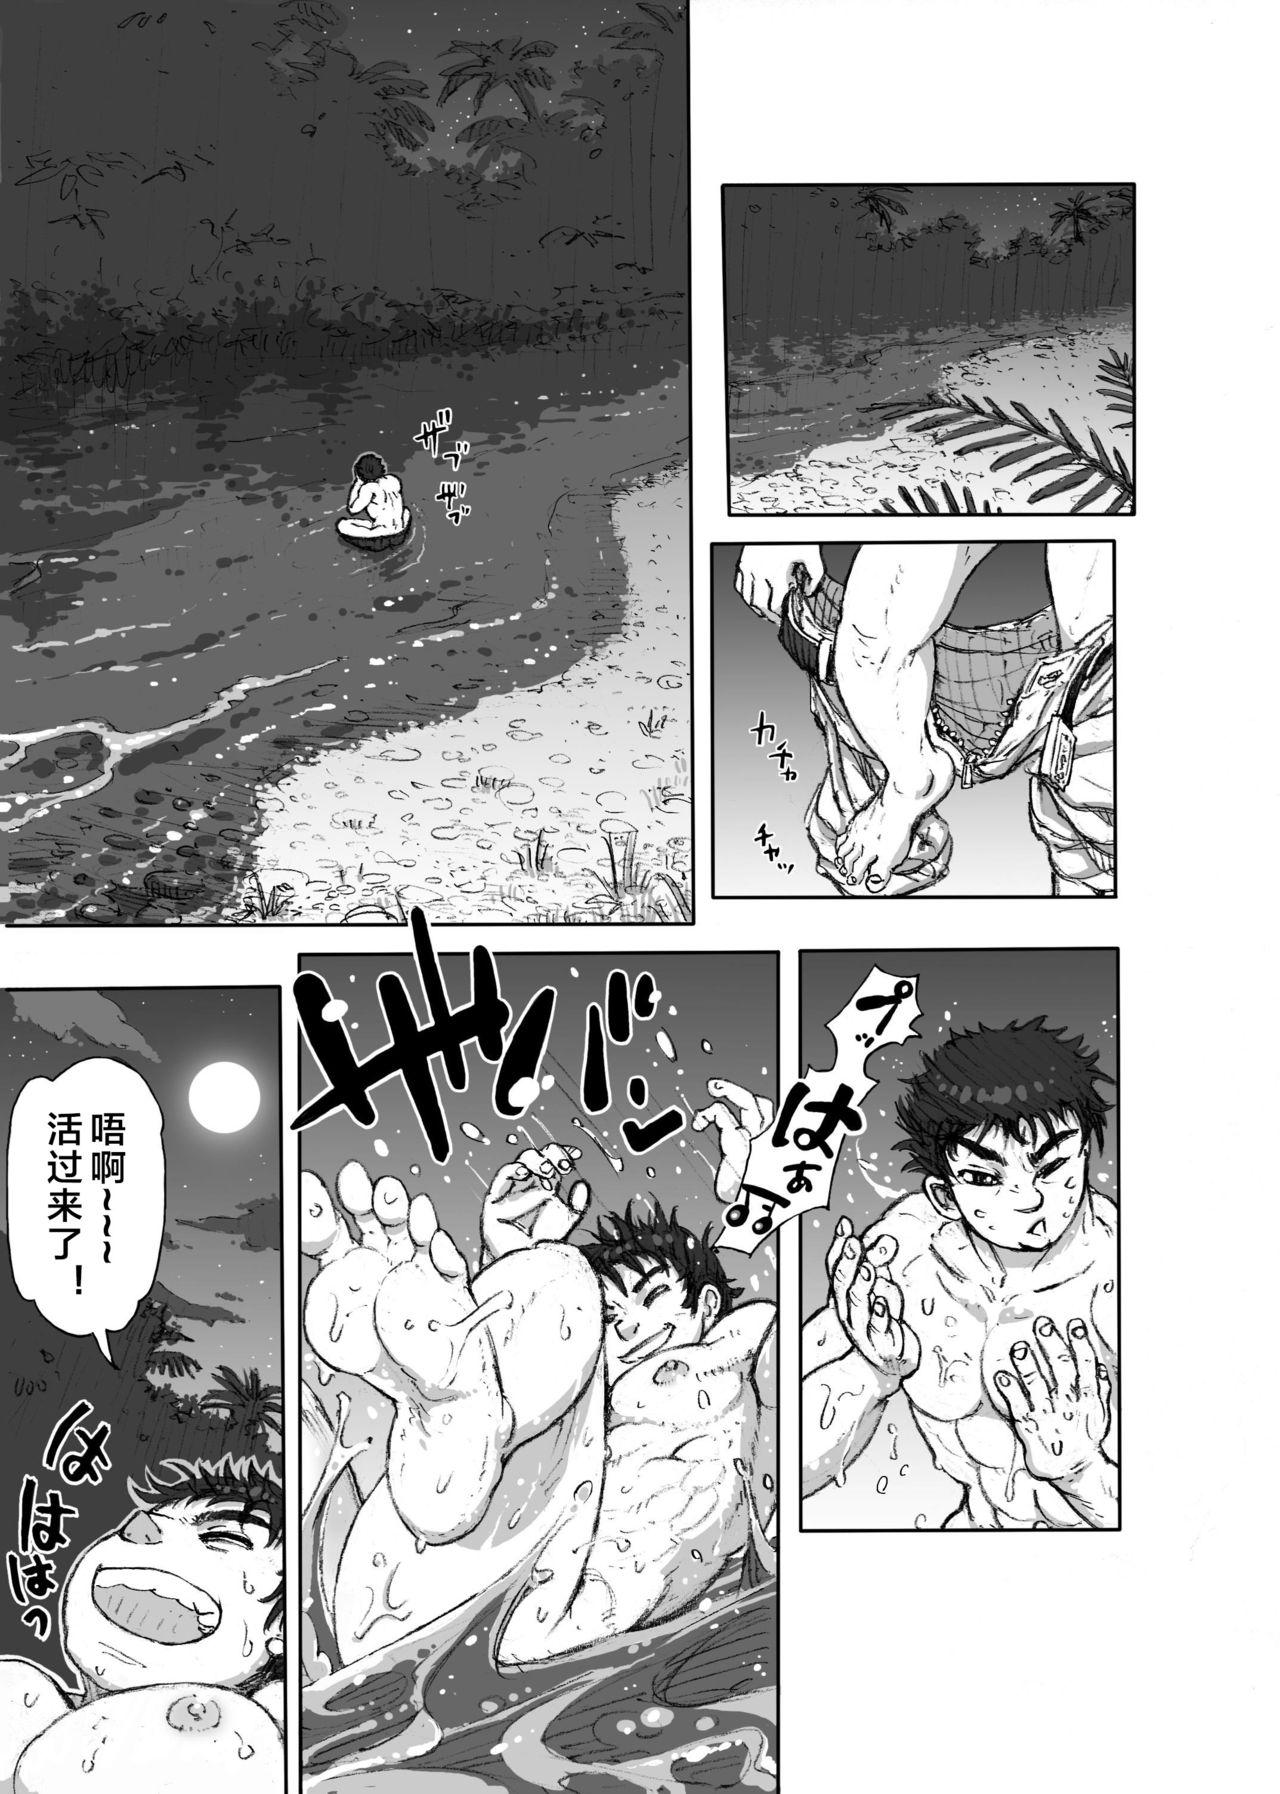 Stepsiblings Hepoe no Kuni kara 1 - Mizu no Gakusha Sensei, Hi no Buzoku no Saru ni Hazukashimerareru no Maki Women Sucking Dicks - Page 5